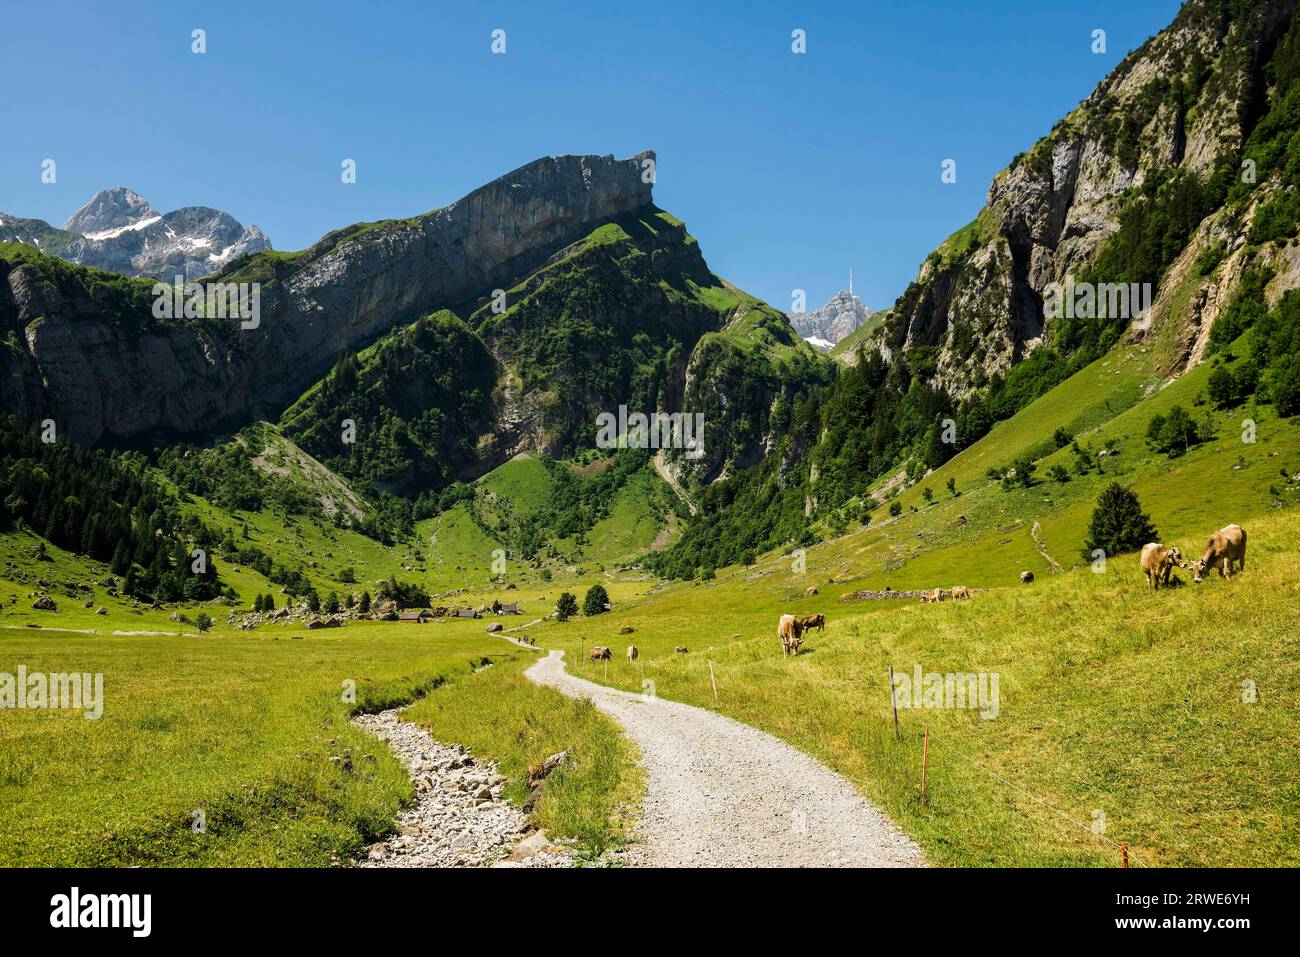 Steep mountains and hiking trail, Seealpsee, Wasserauen, Alpstein, Appenzell Alps, Canton Appenzell Innerrhoden, Switzerland Stock Photo